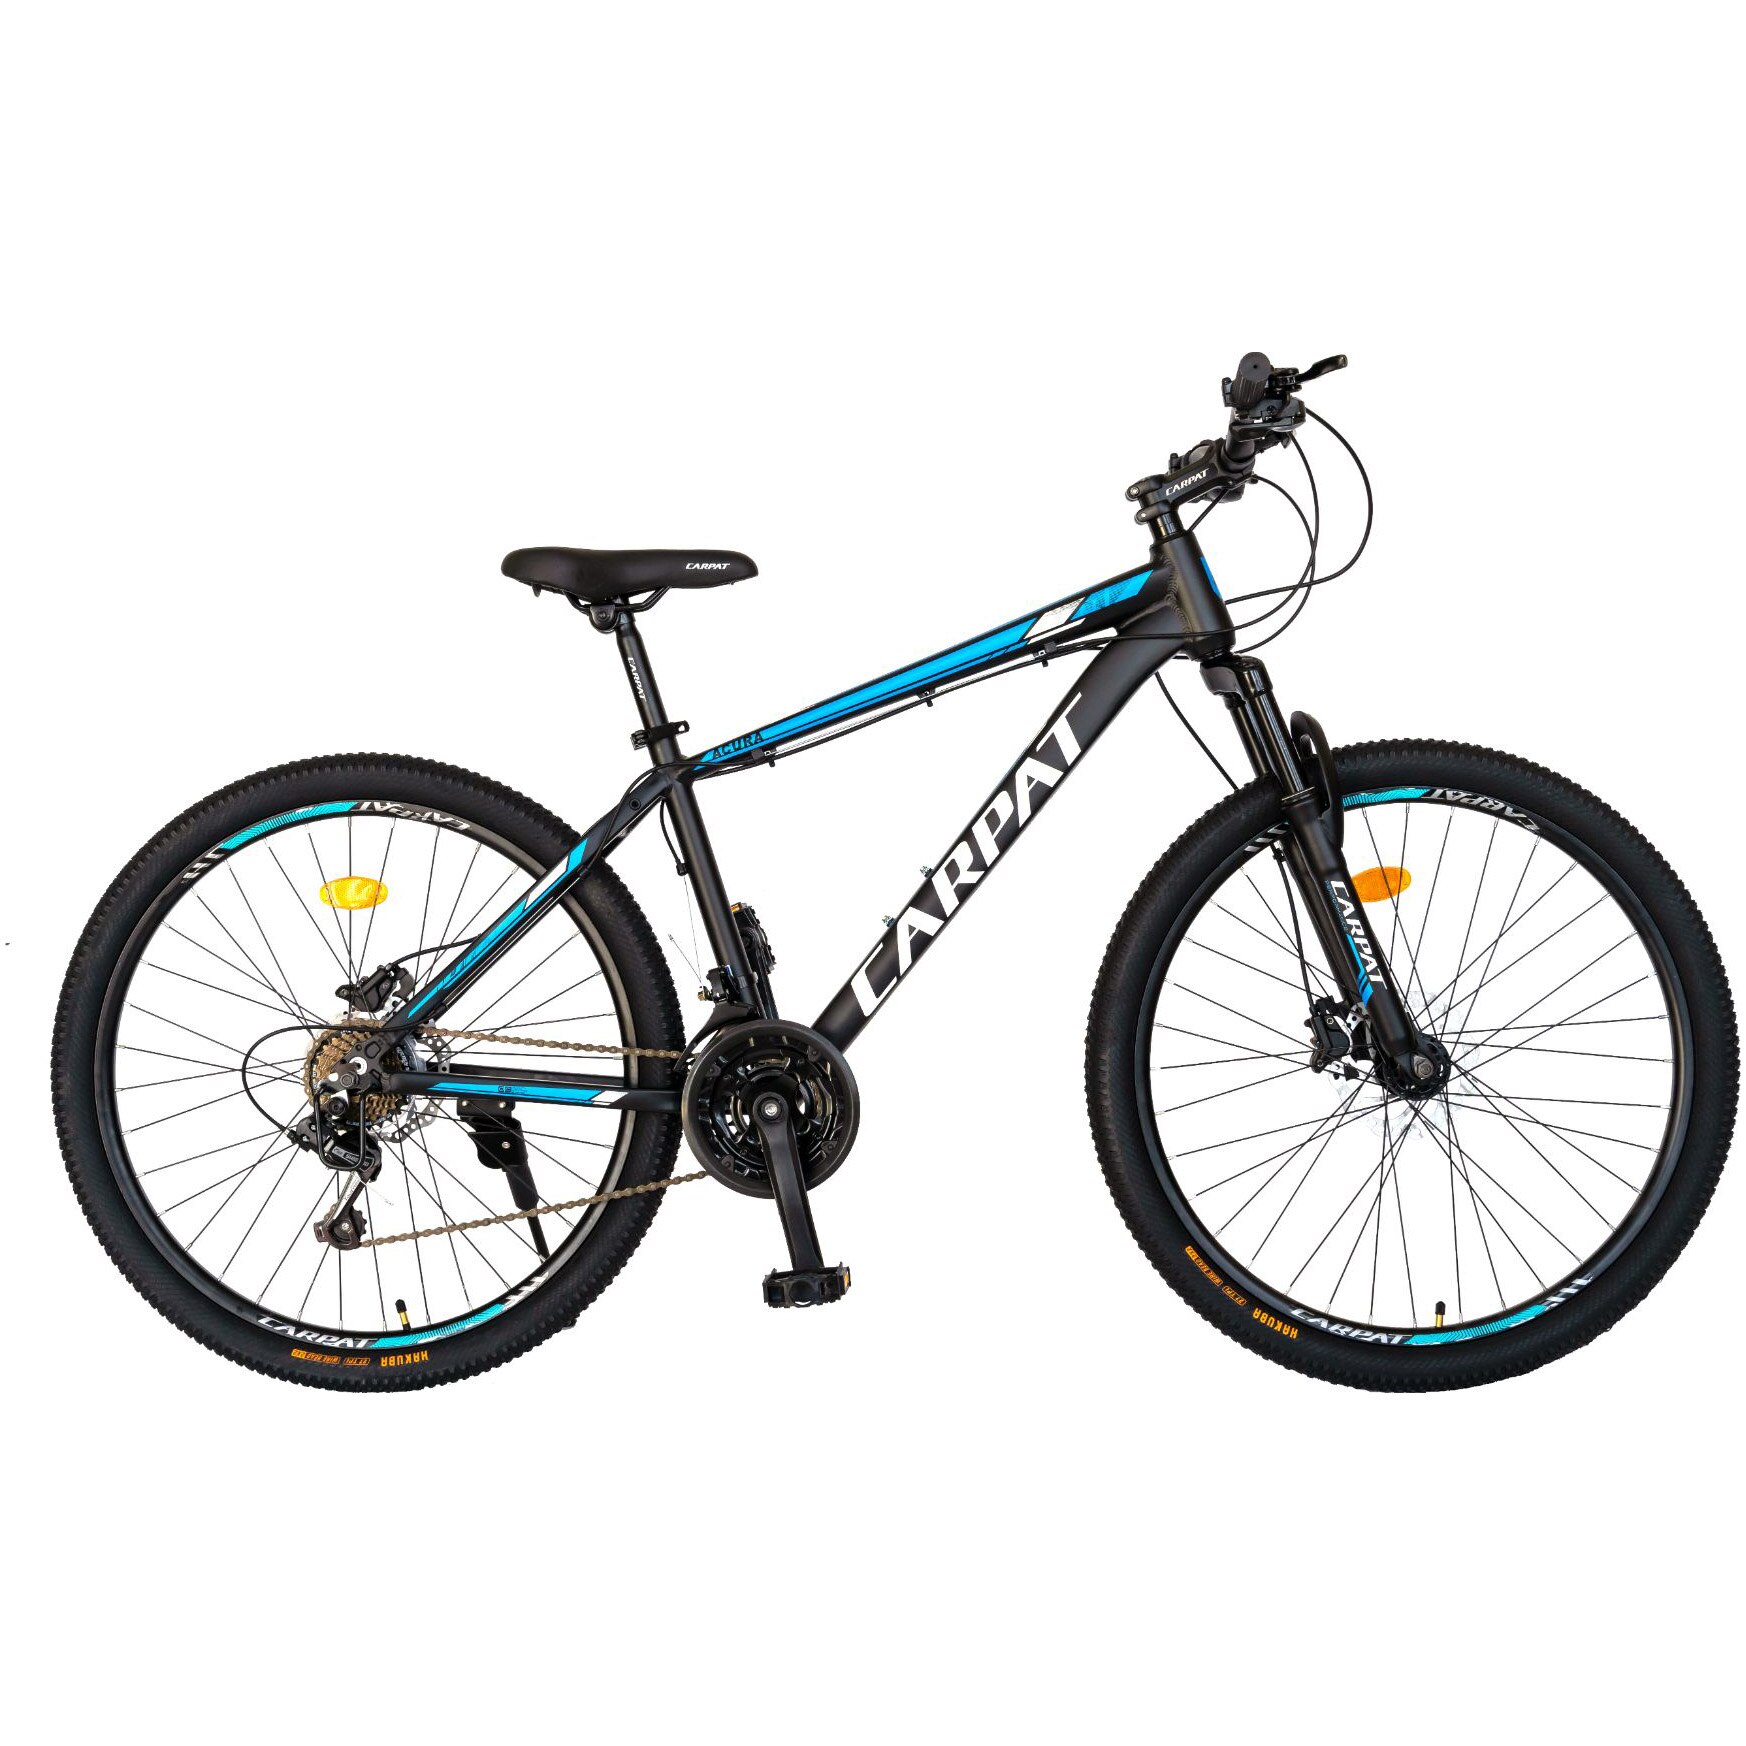 Fotografie Bicicleta MTB Carpat Acura C2999H, 29 inch, 21 viteze, cadru aluminiu, frane hidraulice, negru/albastru/alb